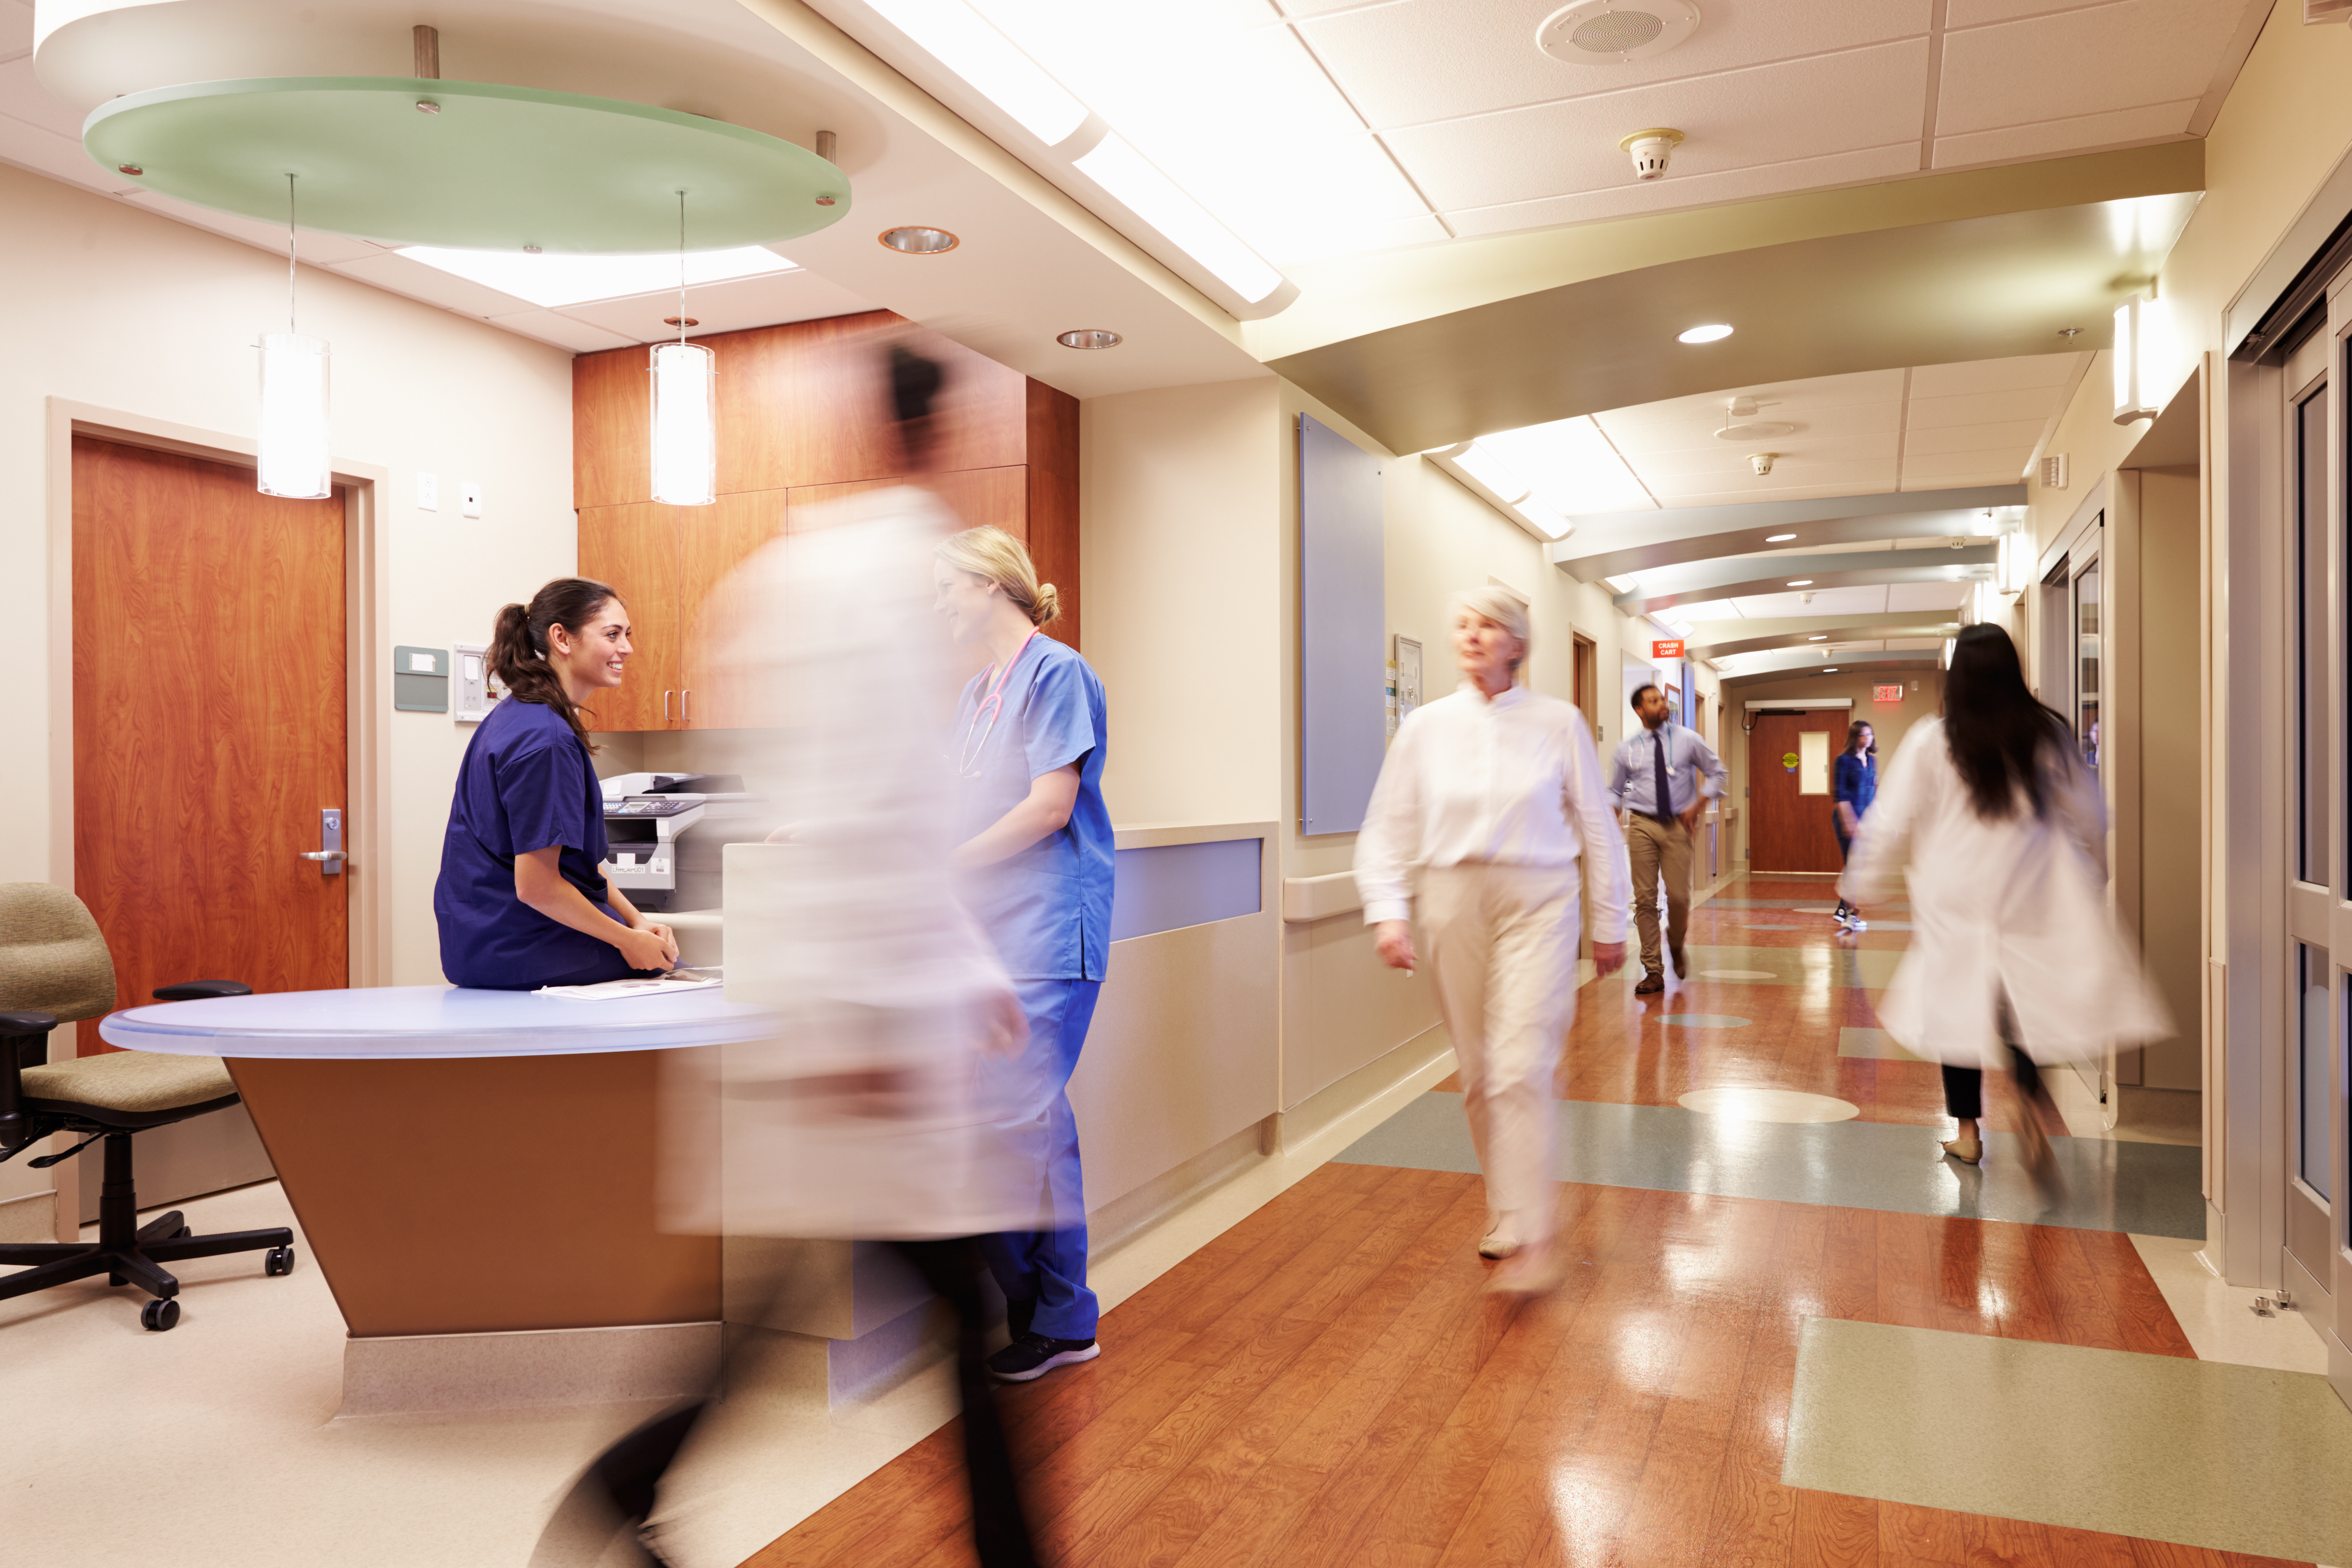 Busy Nurse's Station In Modern Hospital. | Source: Shutterstock